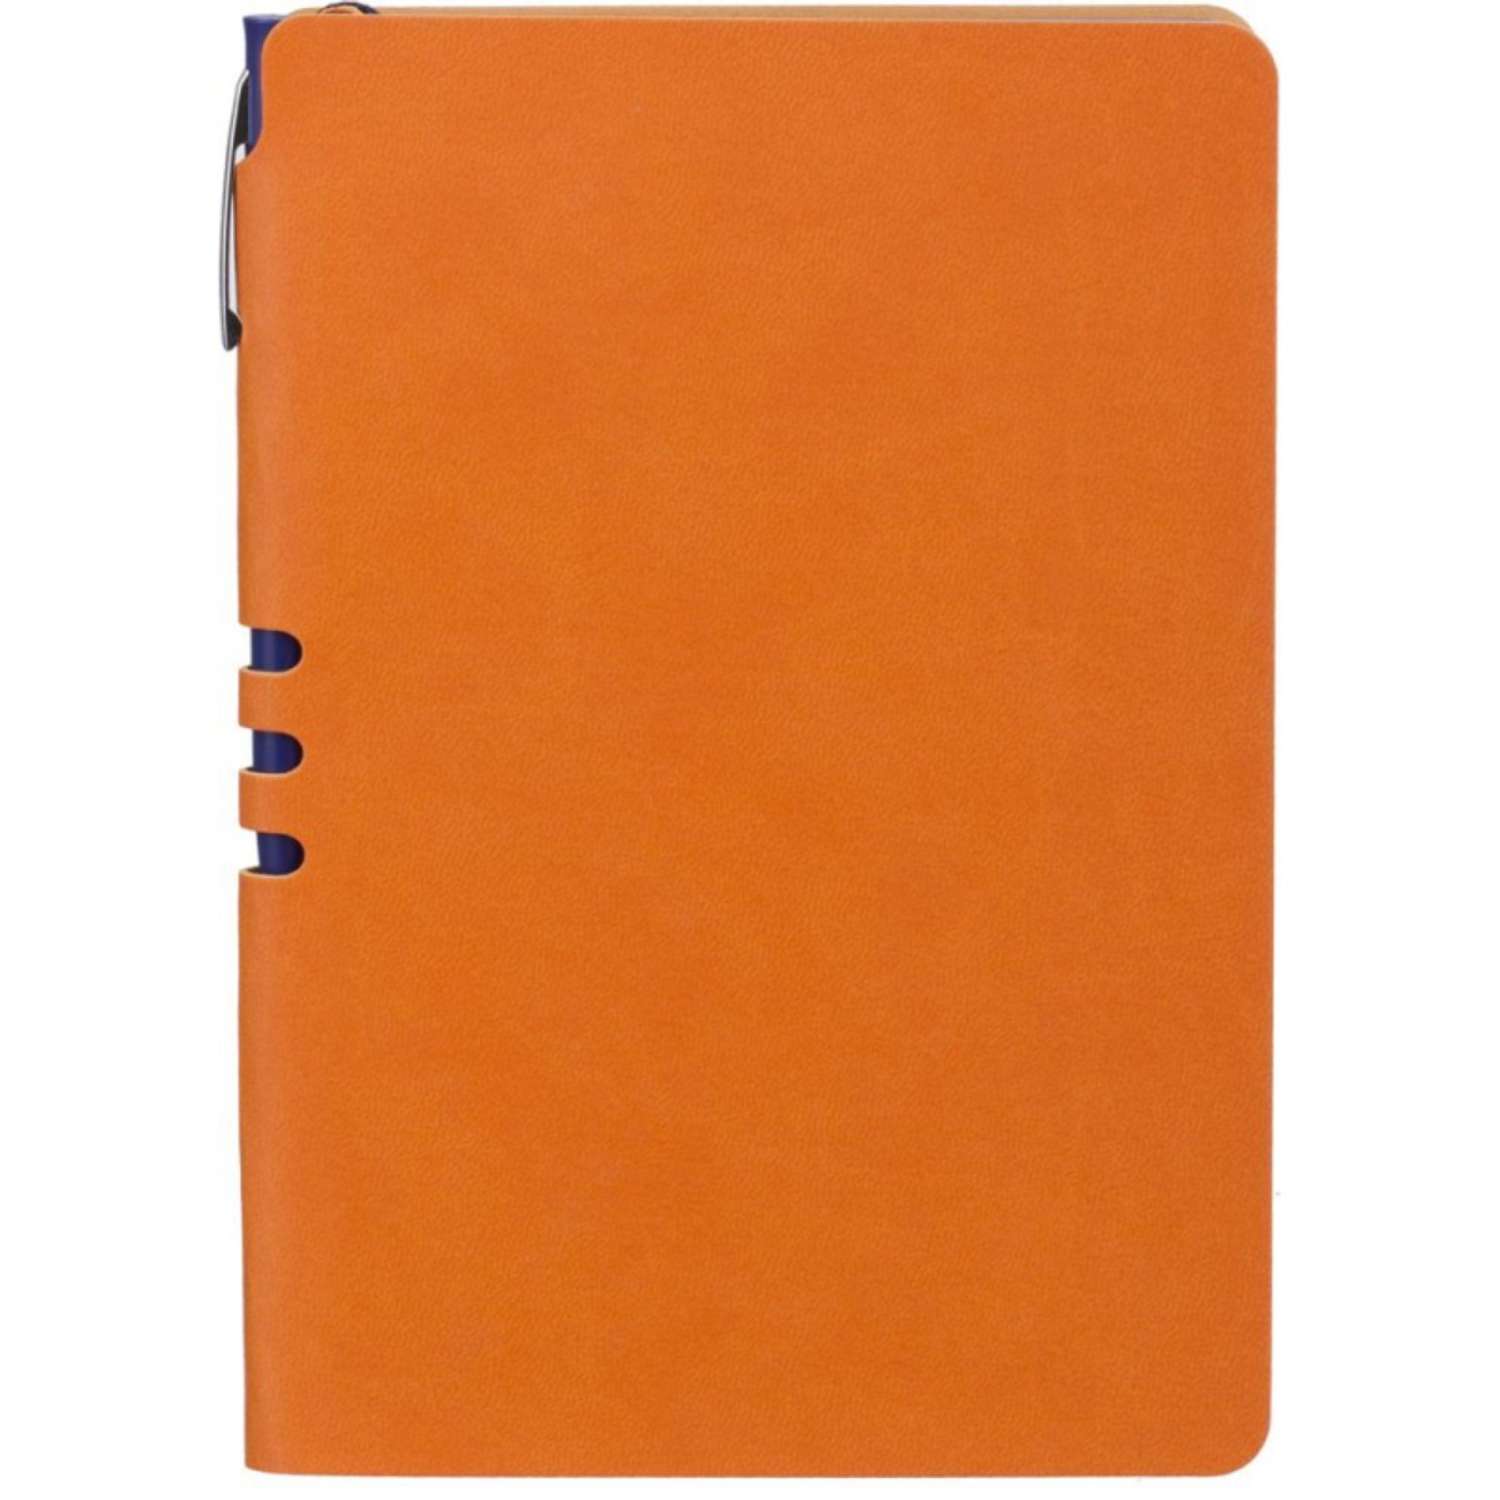 Бизнес-тетрадь Attache Light Book А5 112 листов линия цветной срез кожзаменитель оранжевый - фото 1